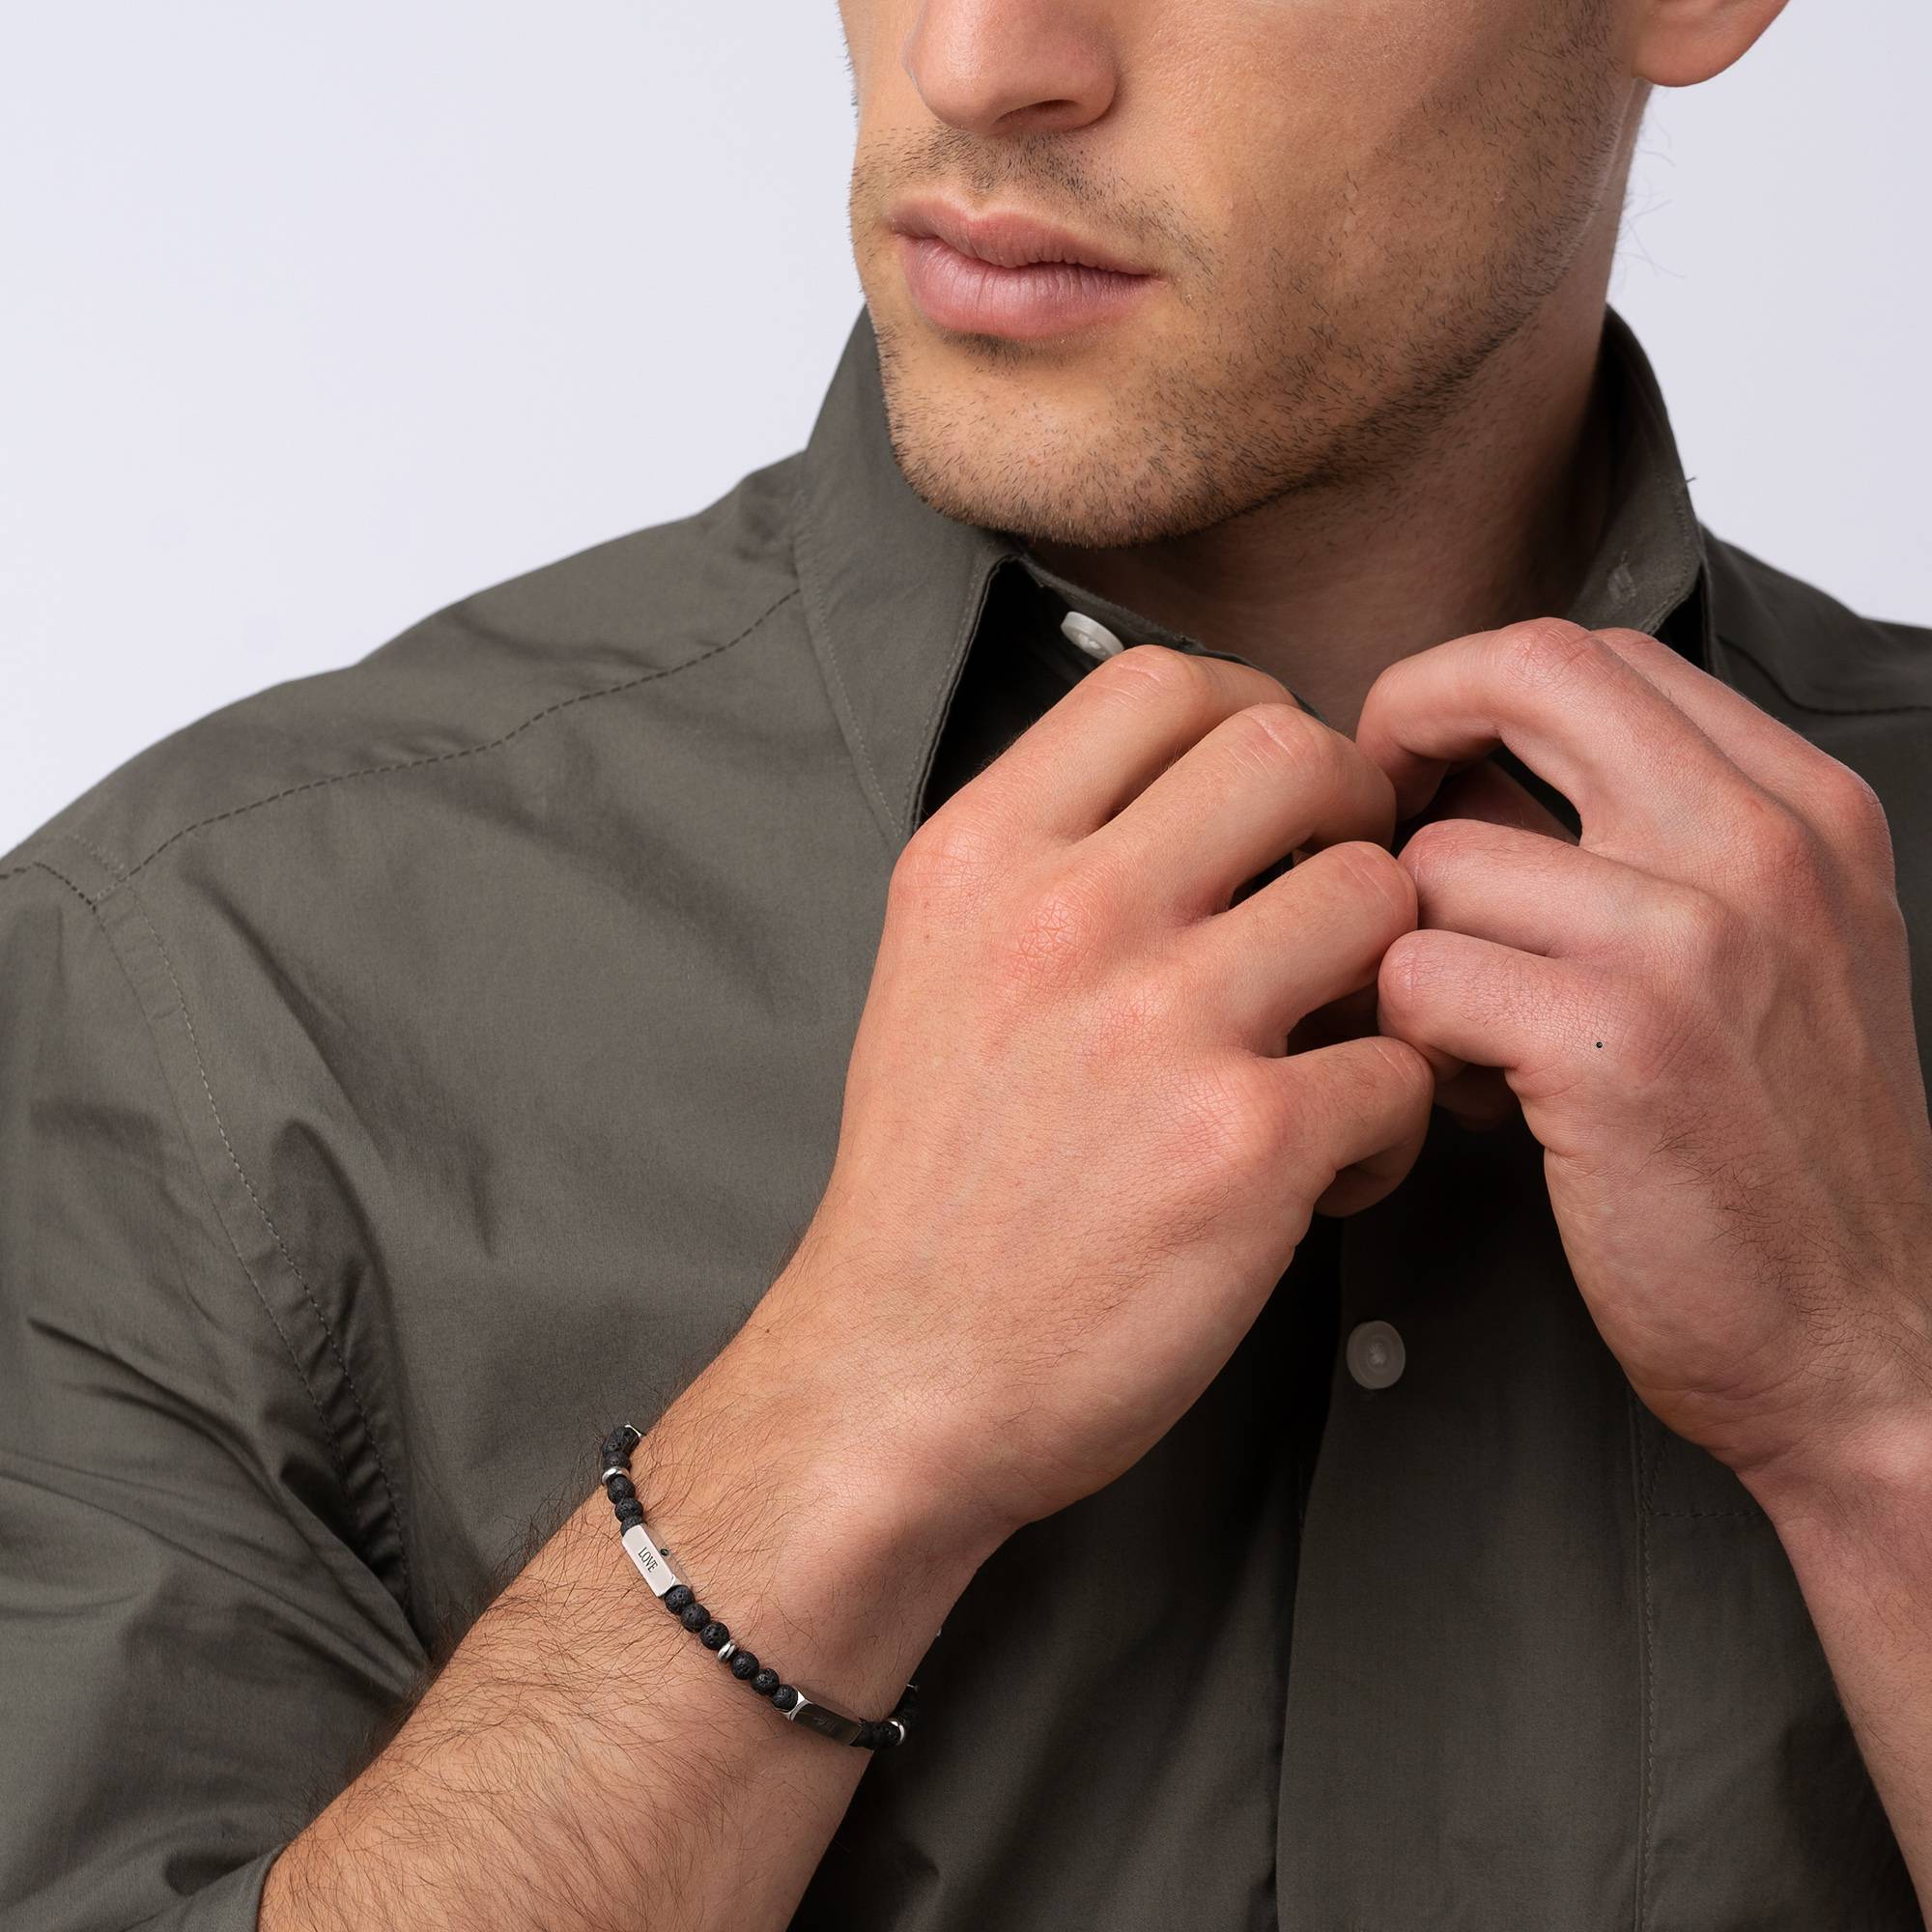 East Coast gepersonaliseerde halfedelstenen kralen armband met zwarte diamanten voor heren-2 Productfoto